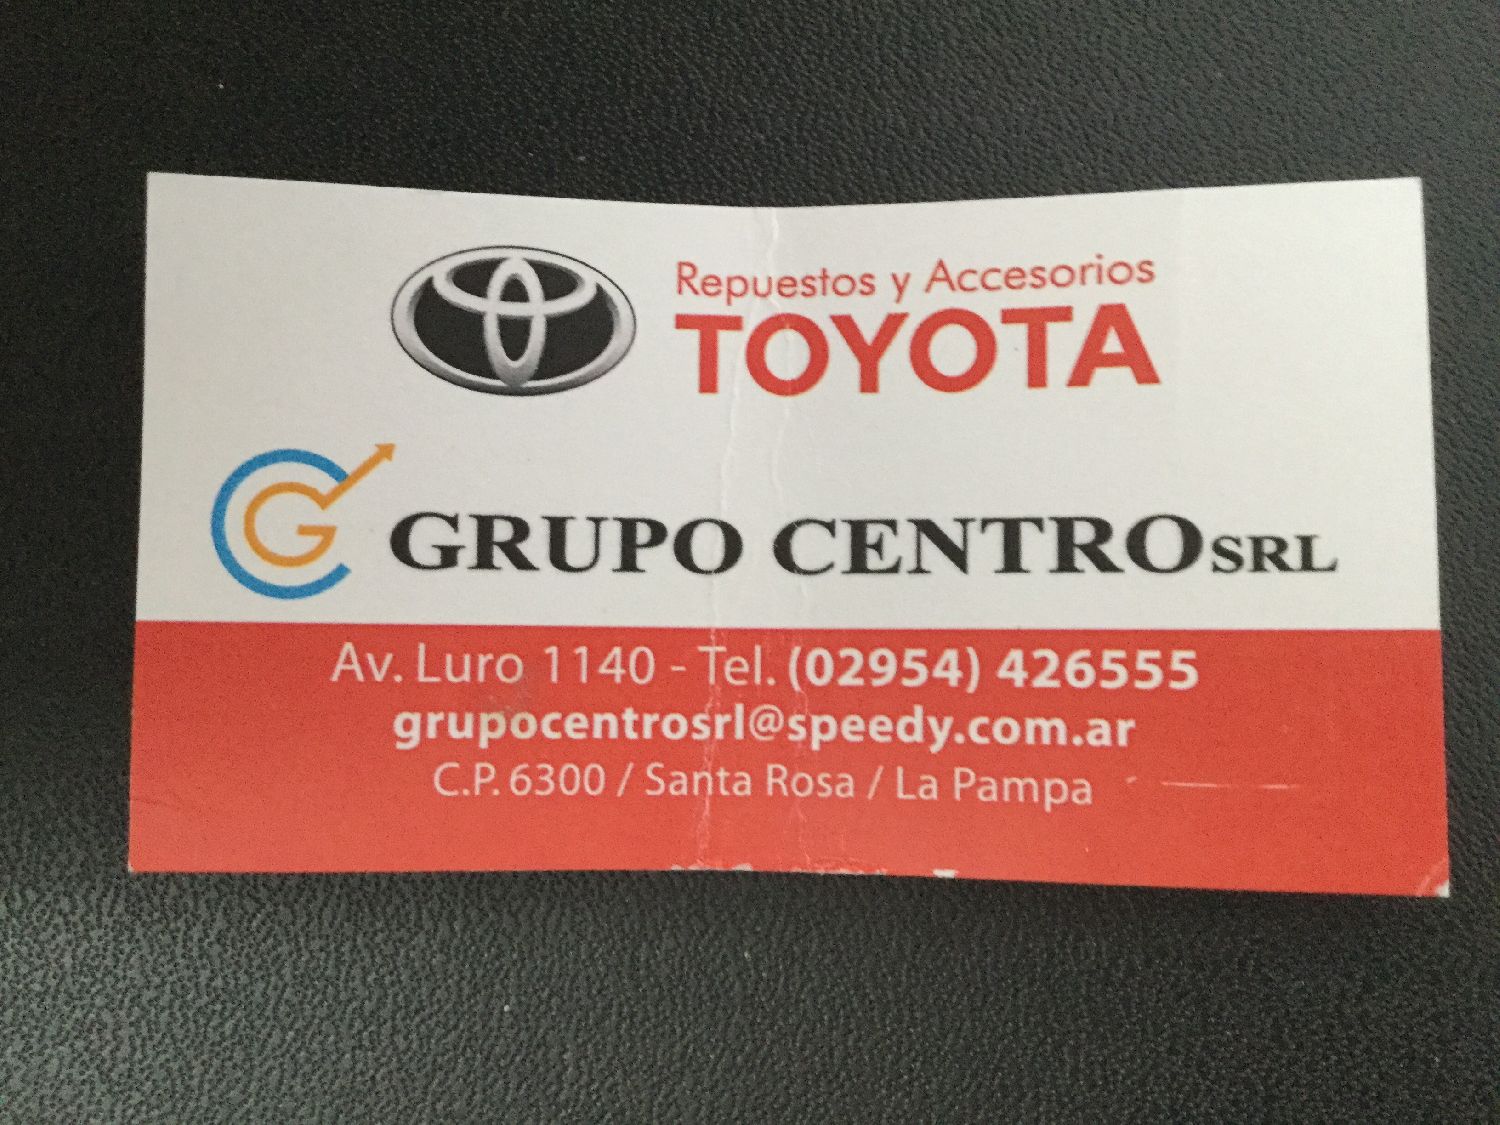 Logotipo Respuestos y Accesorios Toyota